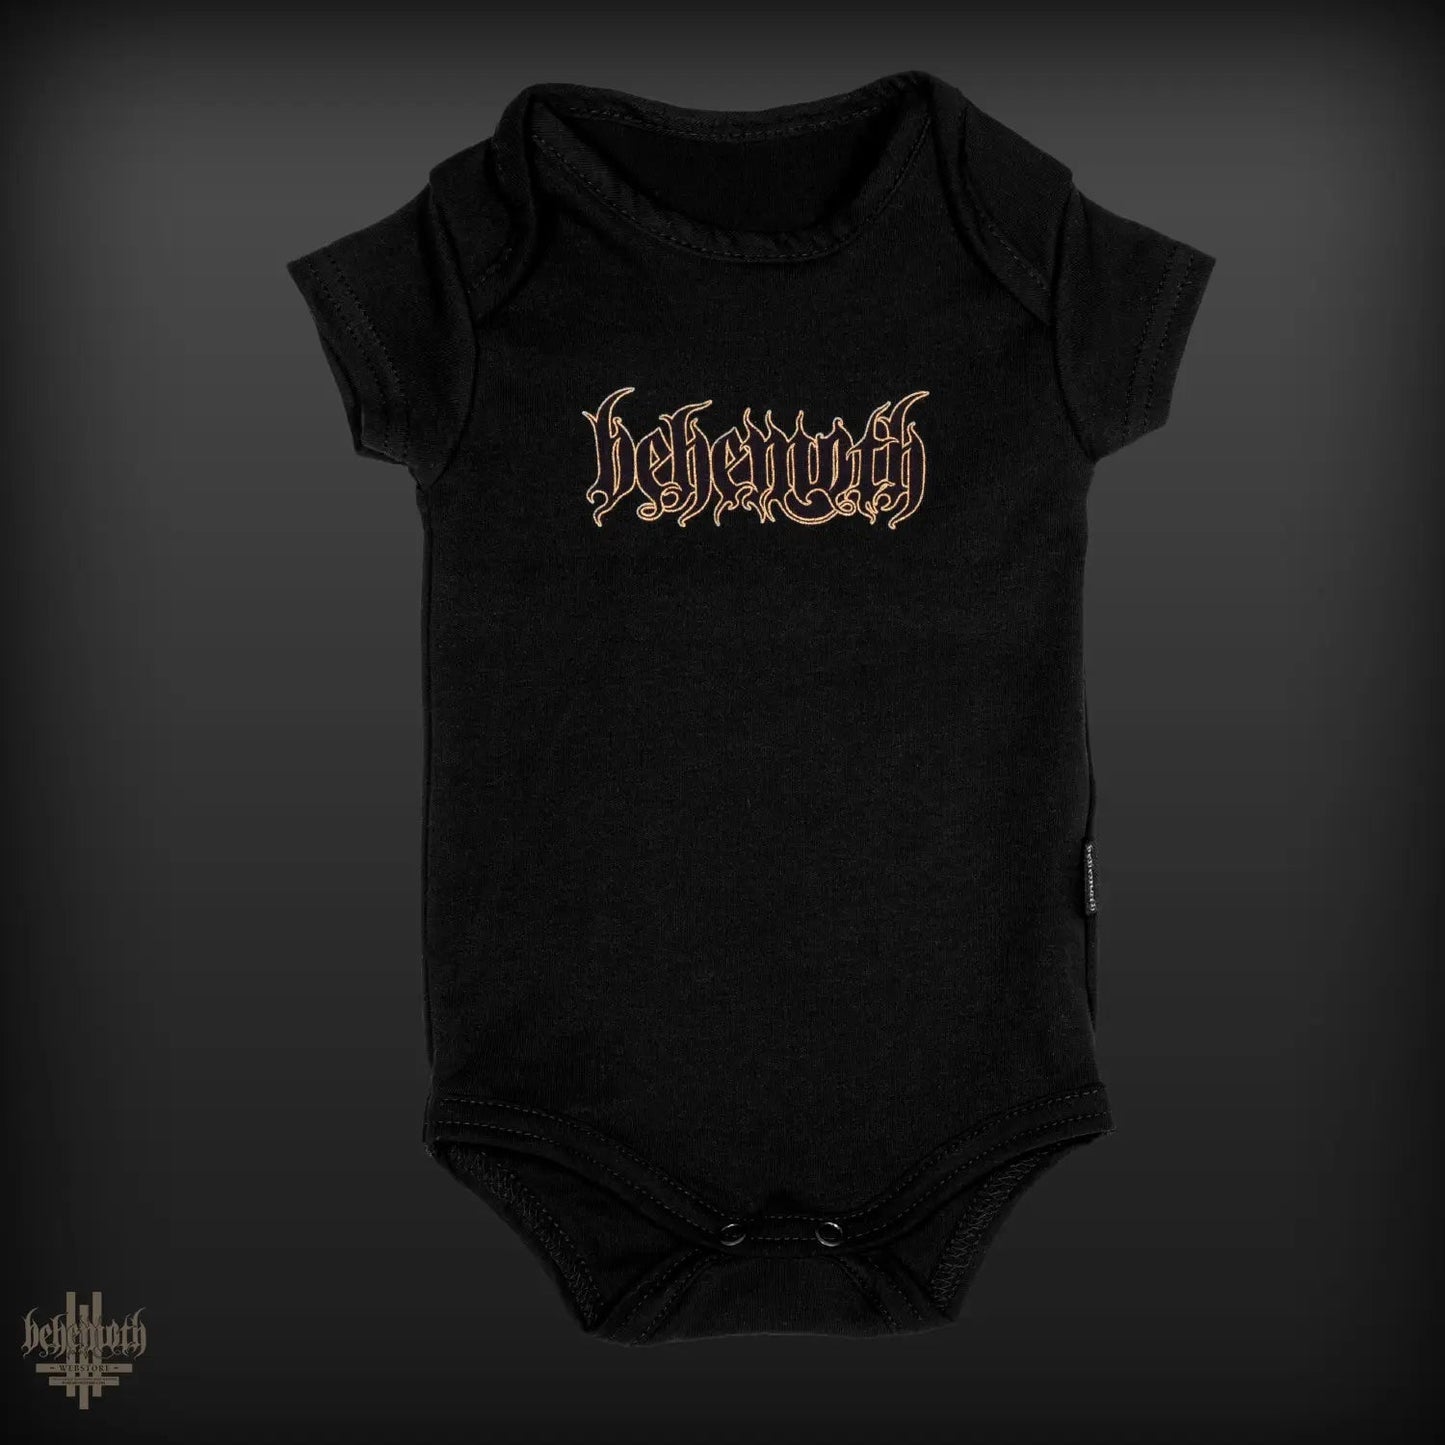 Behemoth 'Logo' baby onesie - short sleeves